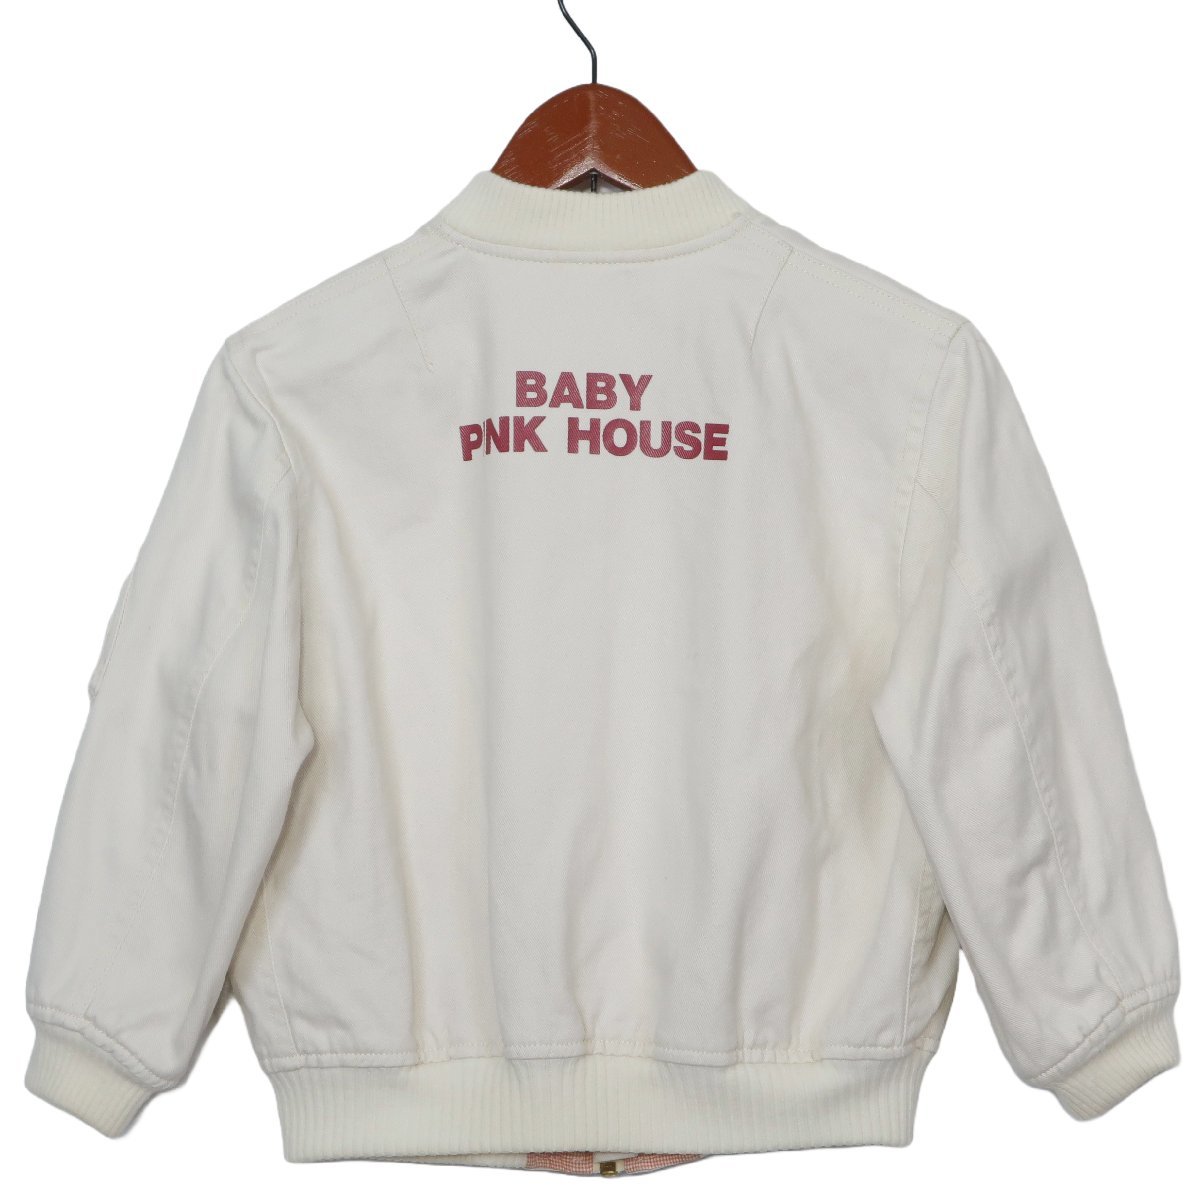  бледно-розовый house * Zip выше блузон размер M(110) серебристый жевательная резинка проверка спина Logo Vintage! off белой серии z4926